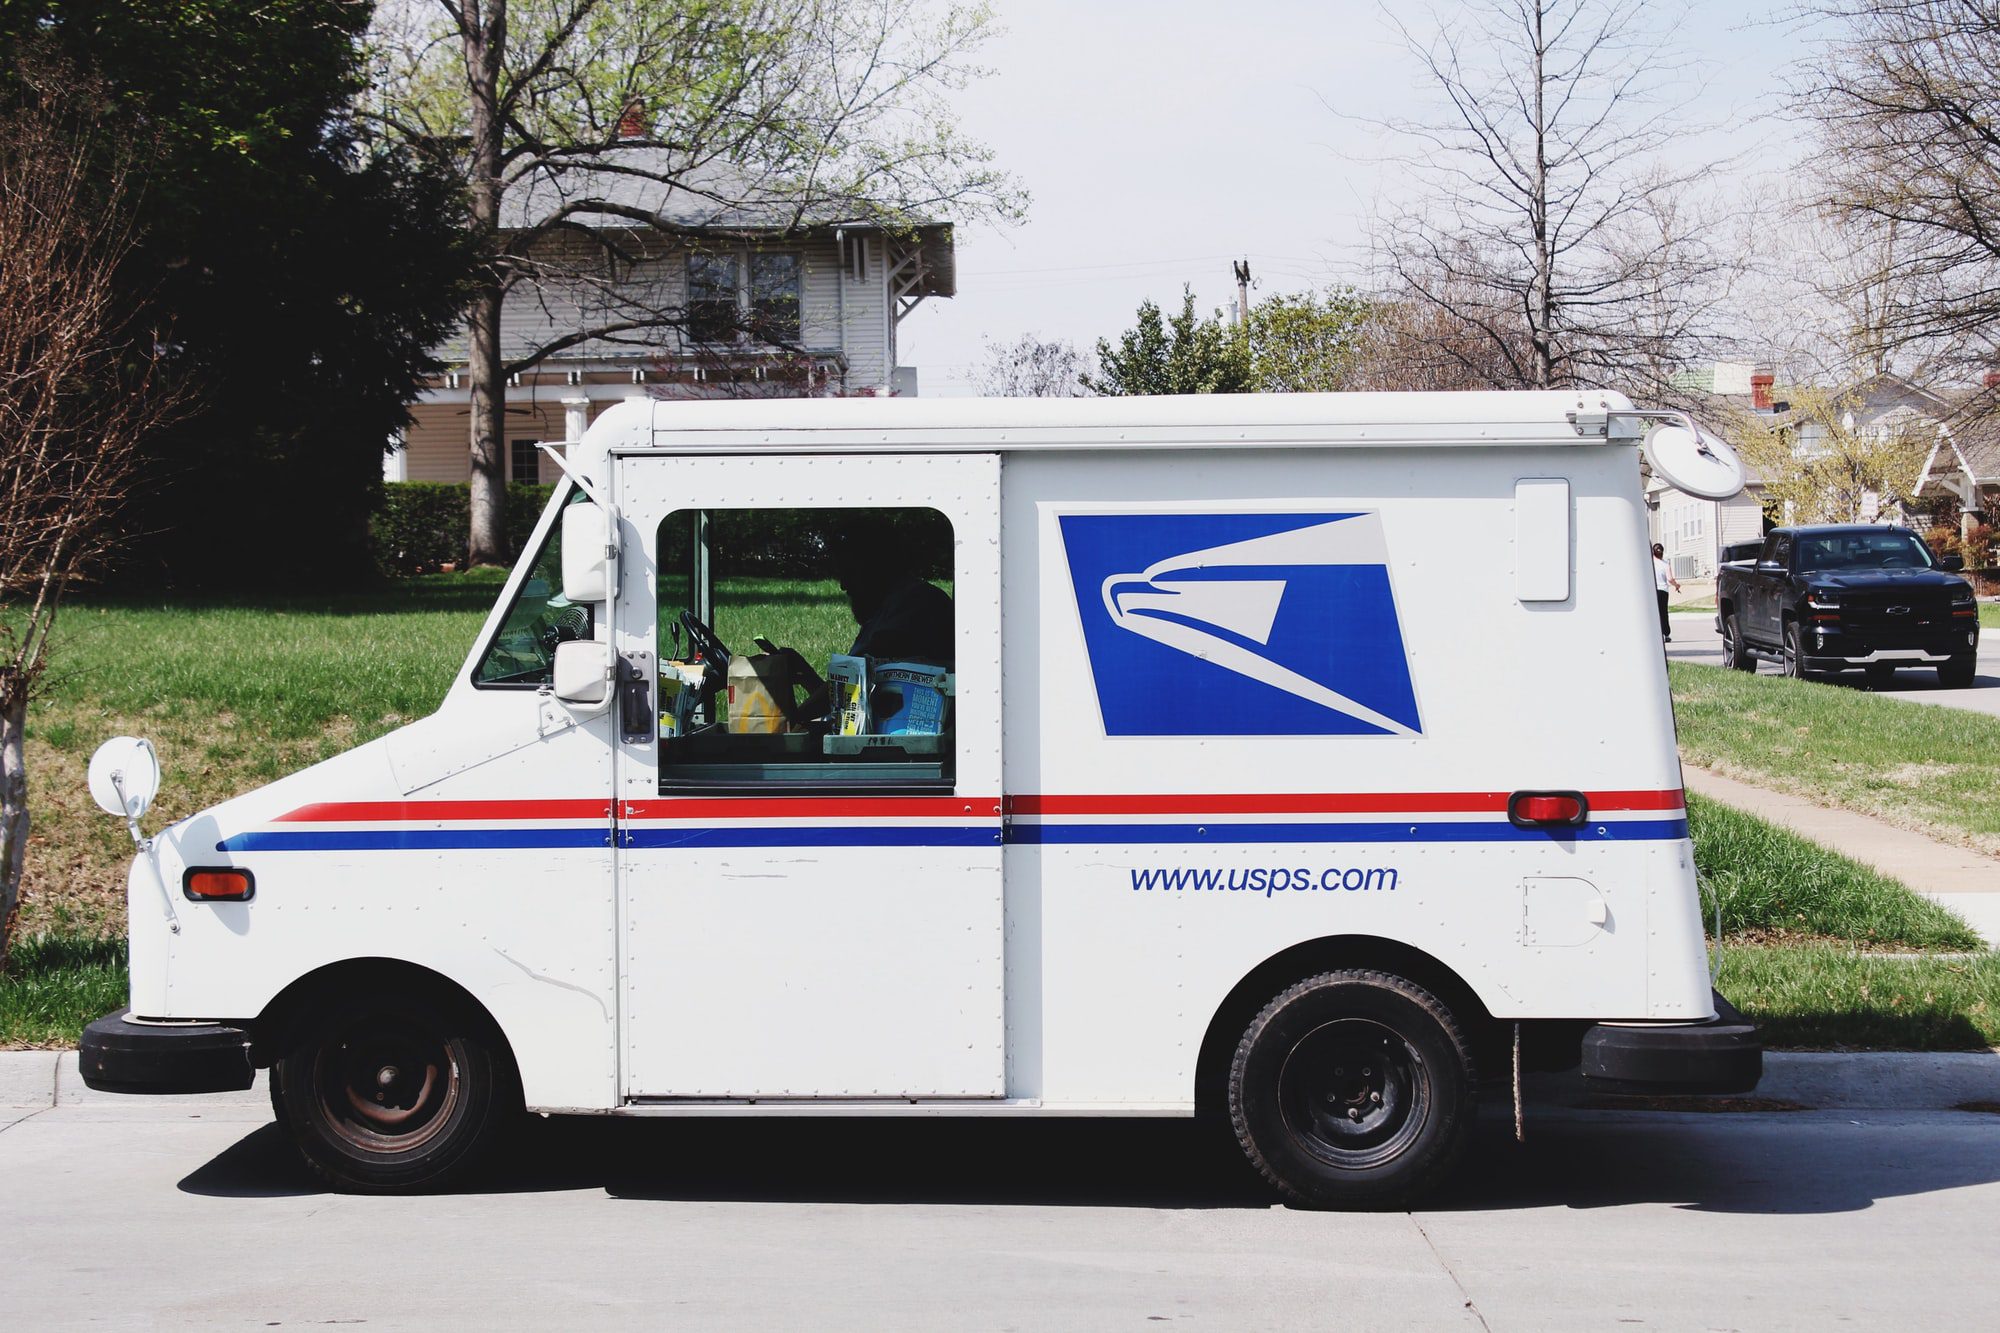 Utiliser Postman pour concevoir une API